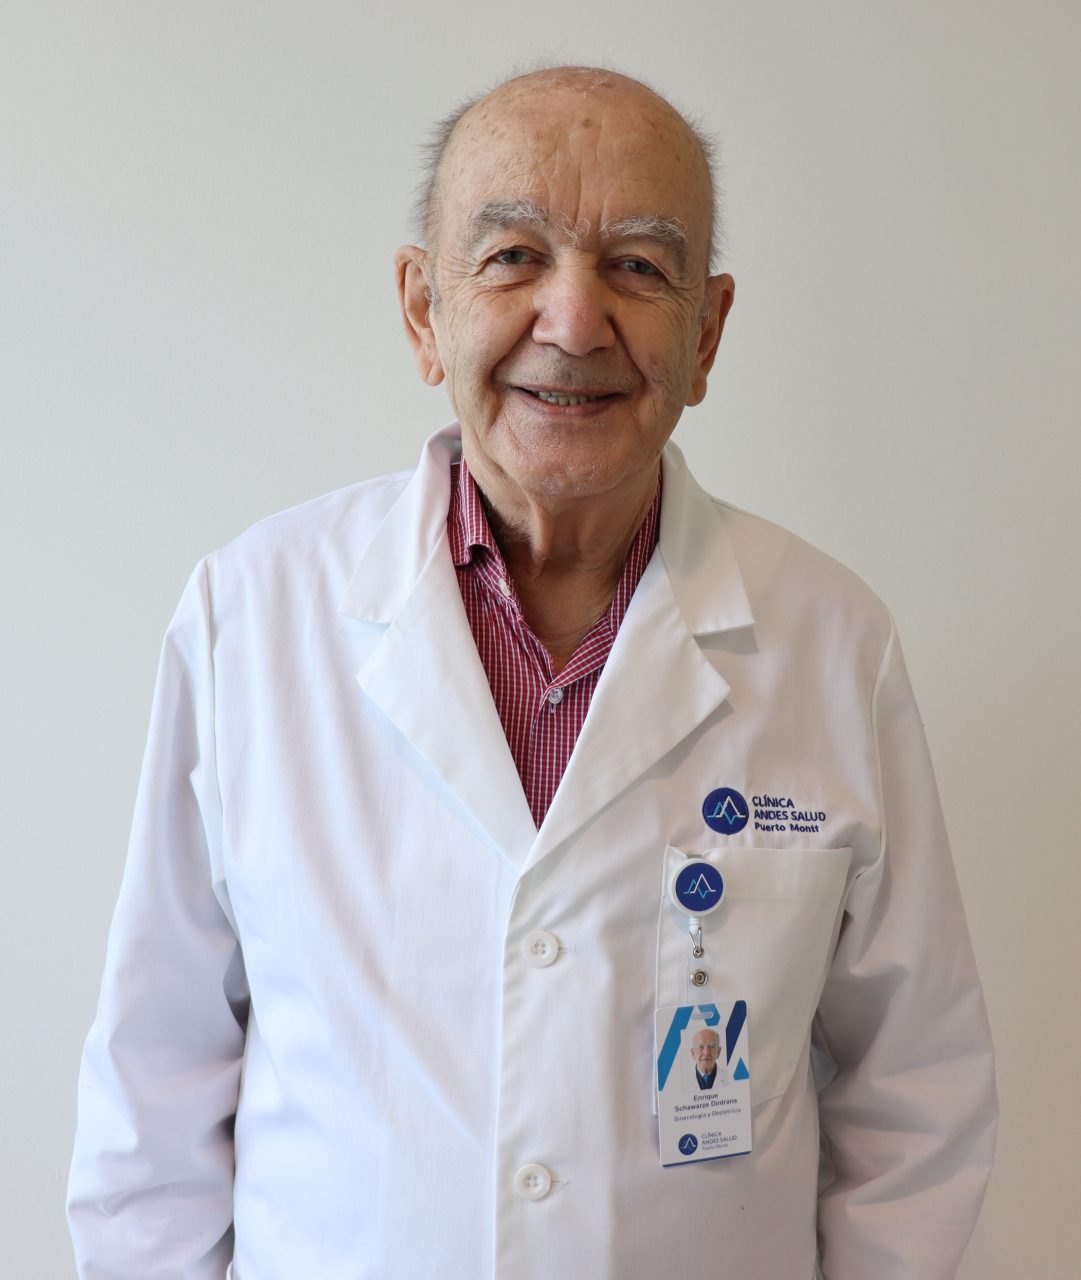 Dr. Enrique Schwarze Dintrans